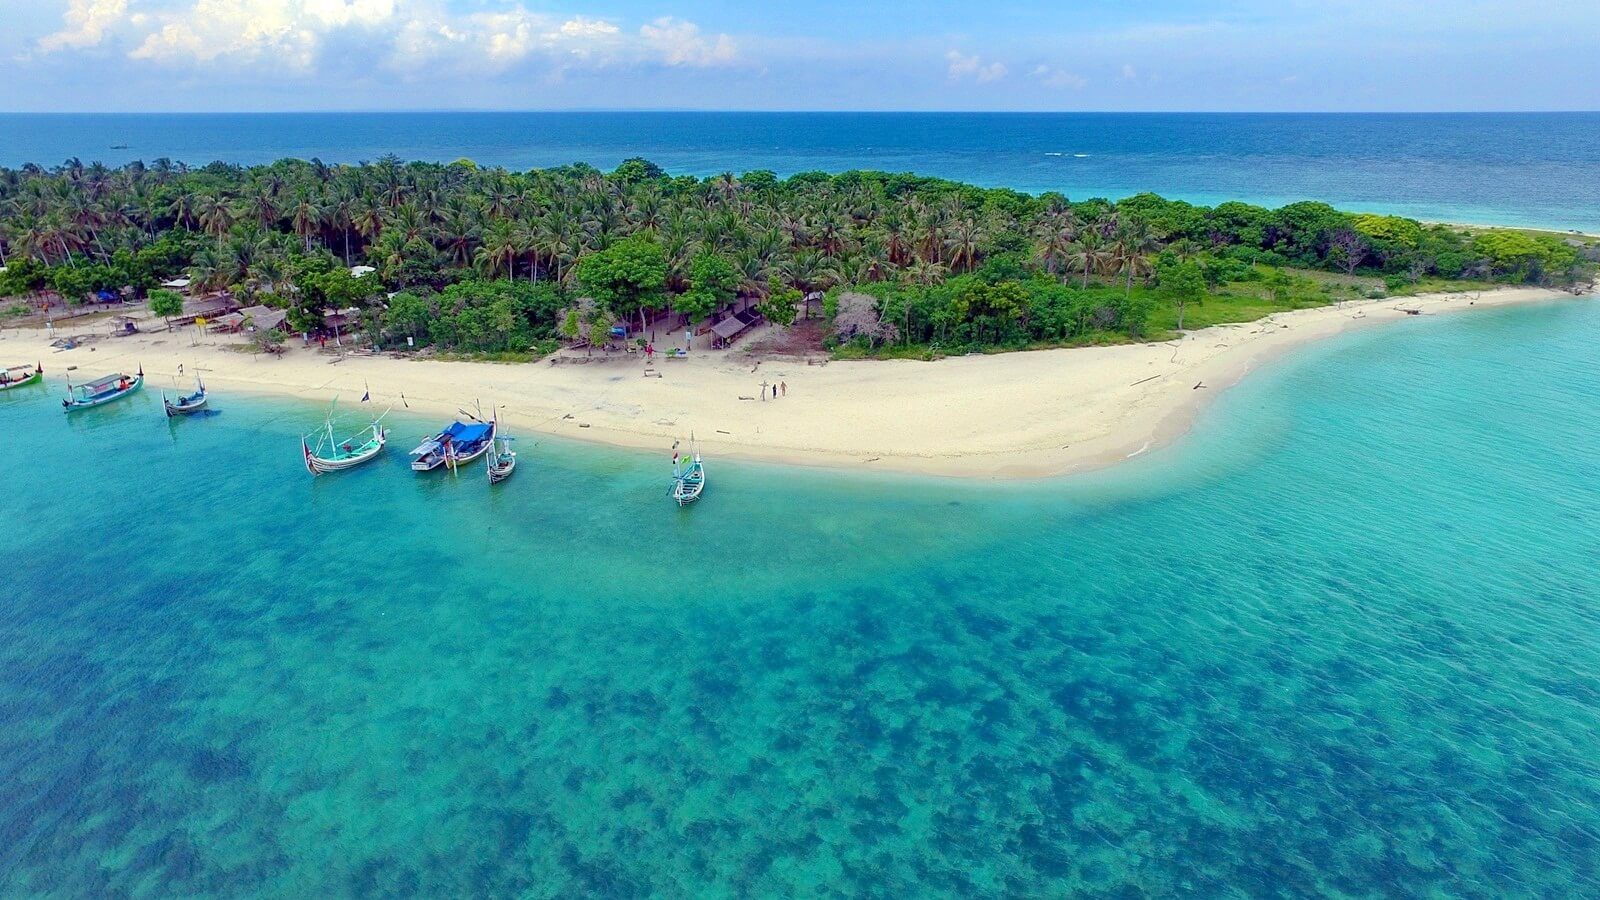 Terungkap! 5 Fakta Menarik Tentang Pulau Madura yang Belum Banyak Orang Tahu No 1 Tak di Sangka